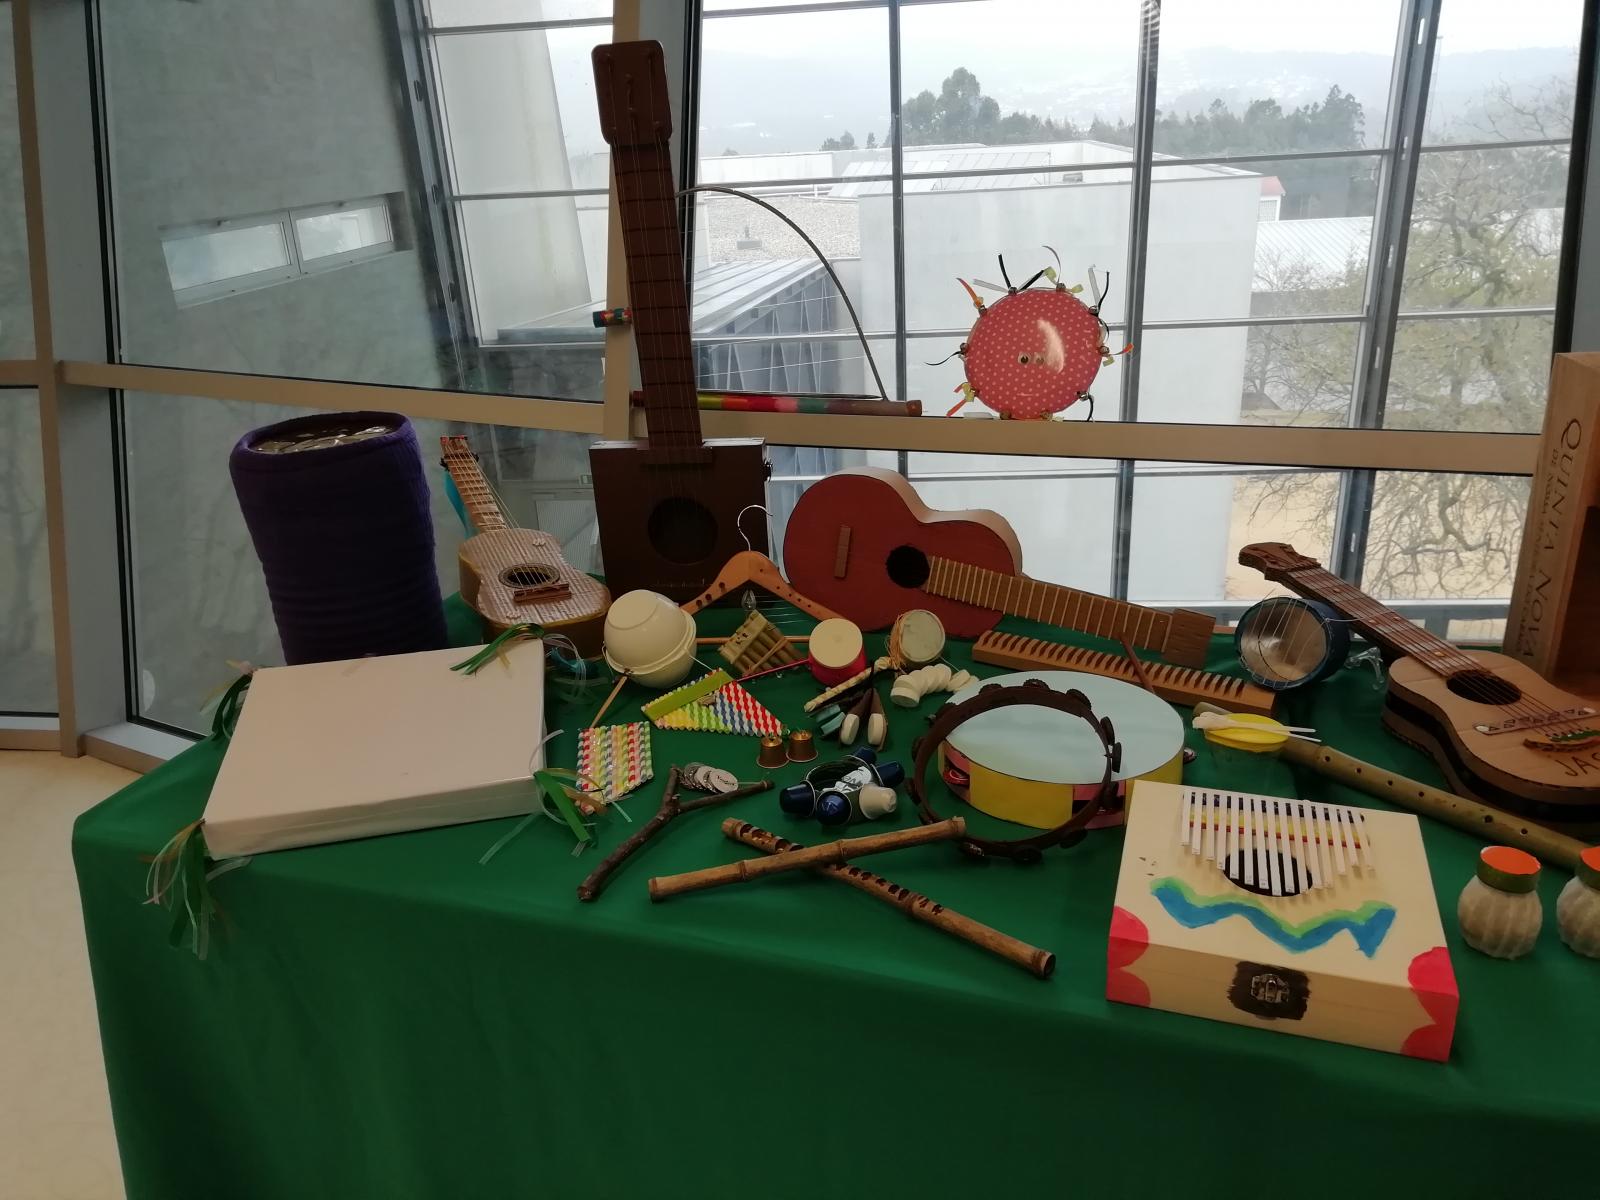 Exposição de Instrumentos musicais com materiais reciclados